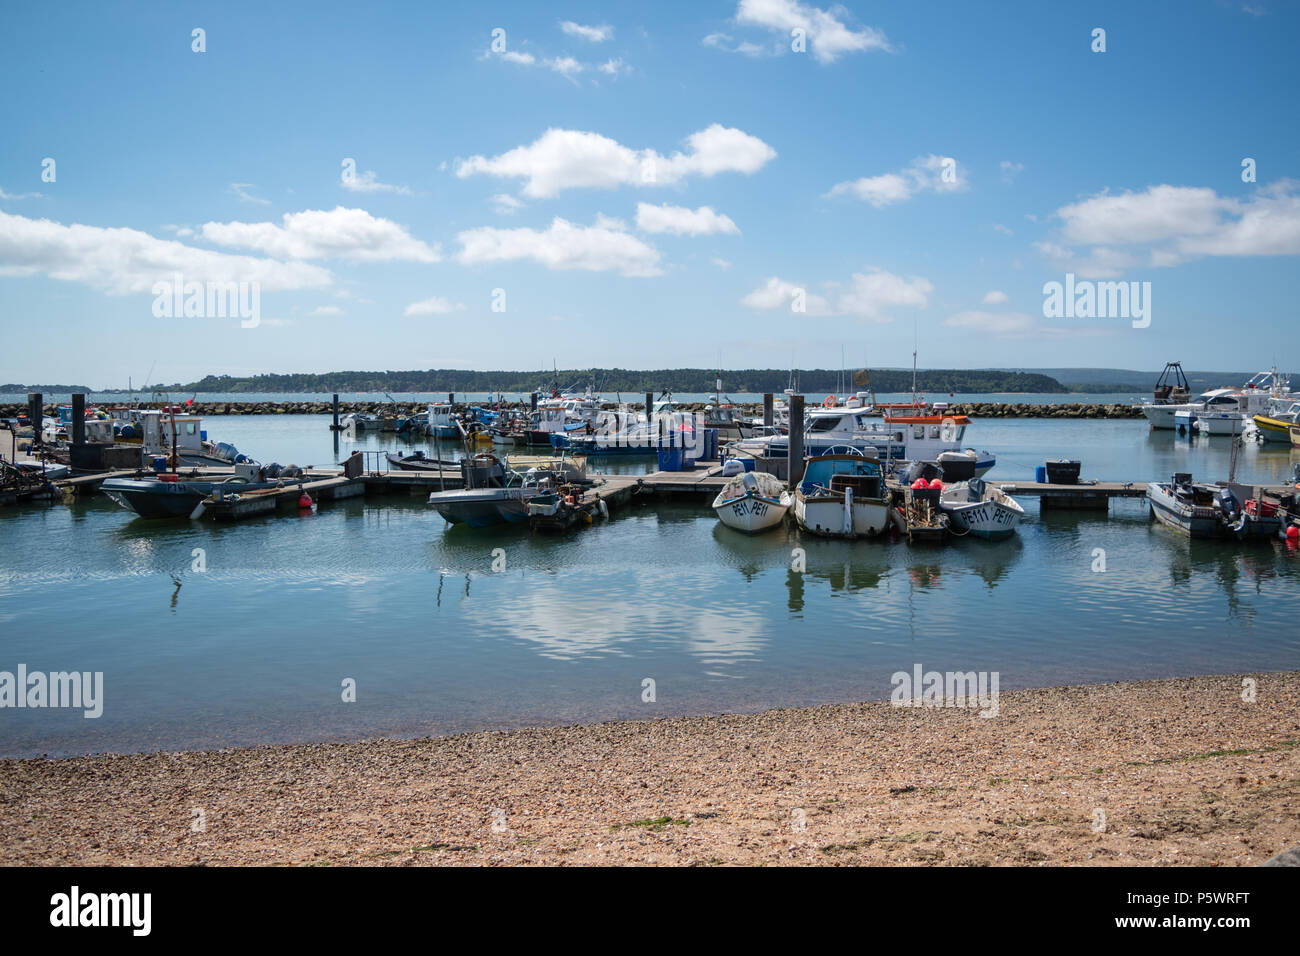 Surplombant les eaux calmes et les bateaux de pêcheurs à quai dans le port de Poole sur une journée ensoleillée avec l'île de Brownsea au loin. Banque D'Images